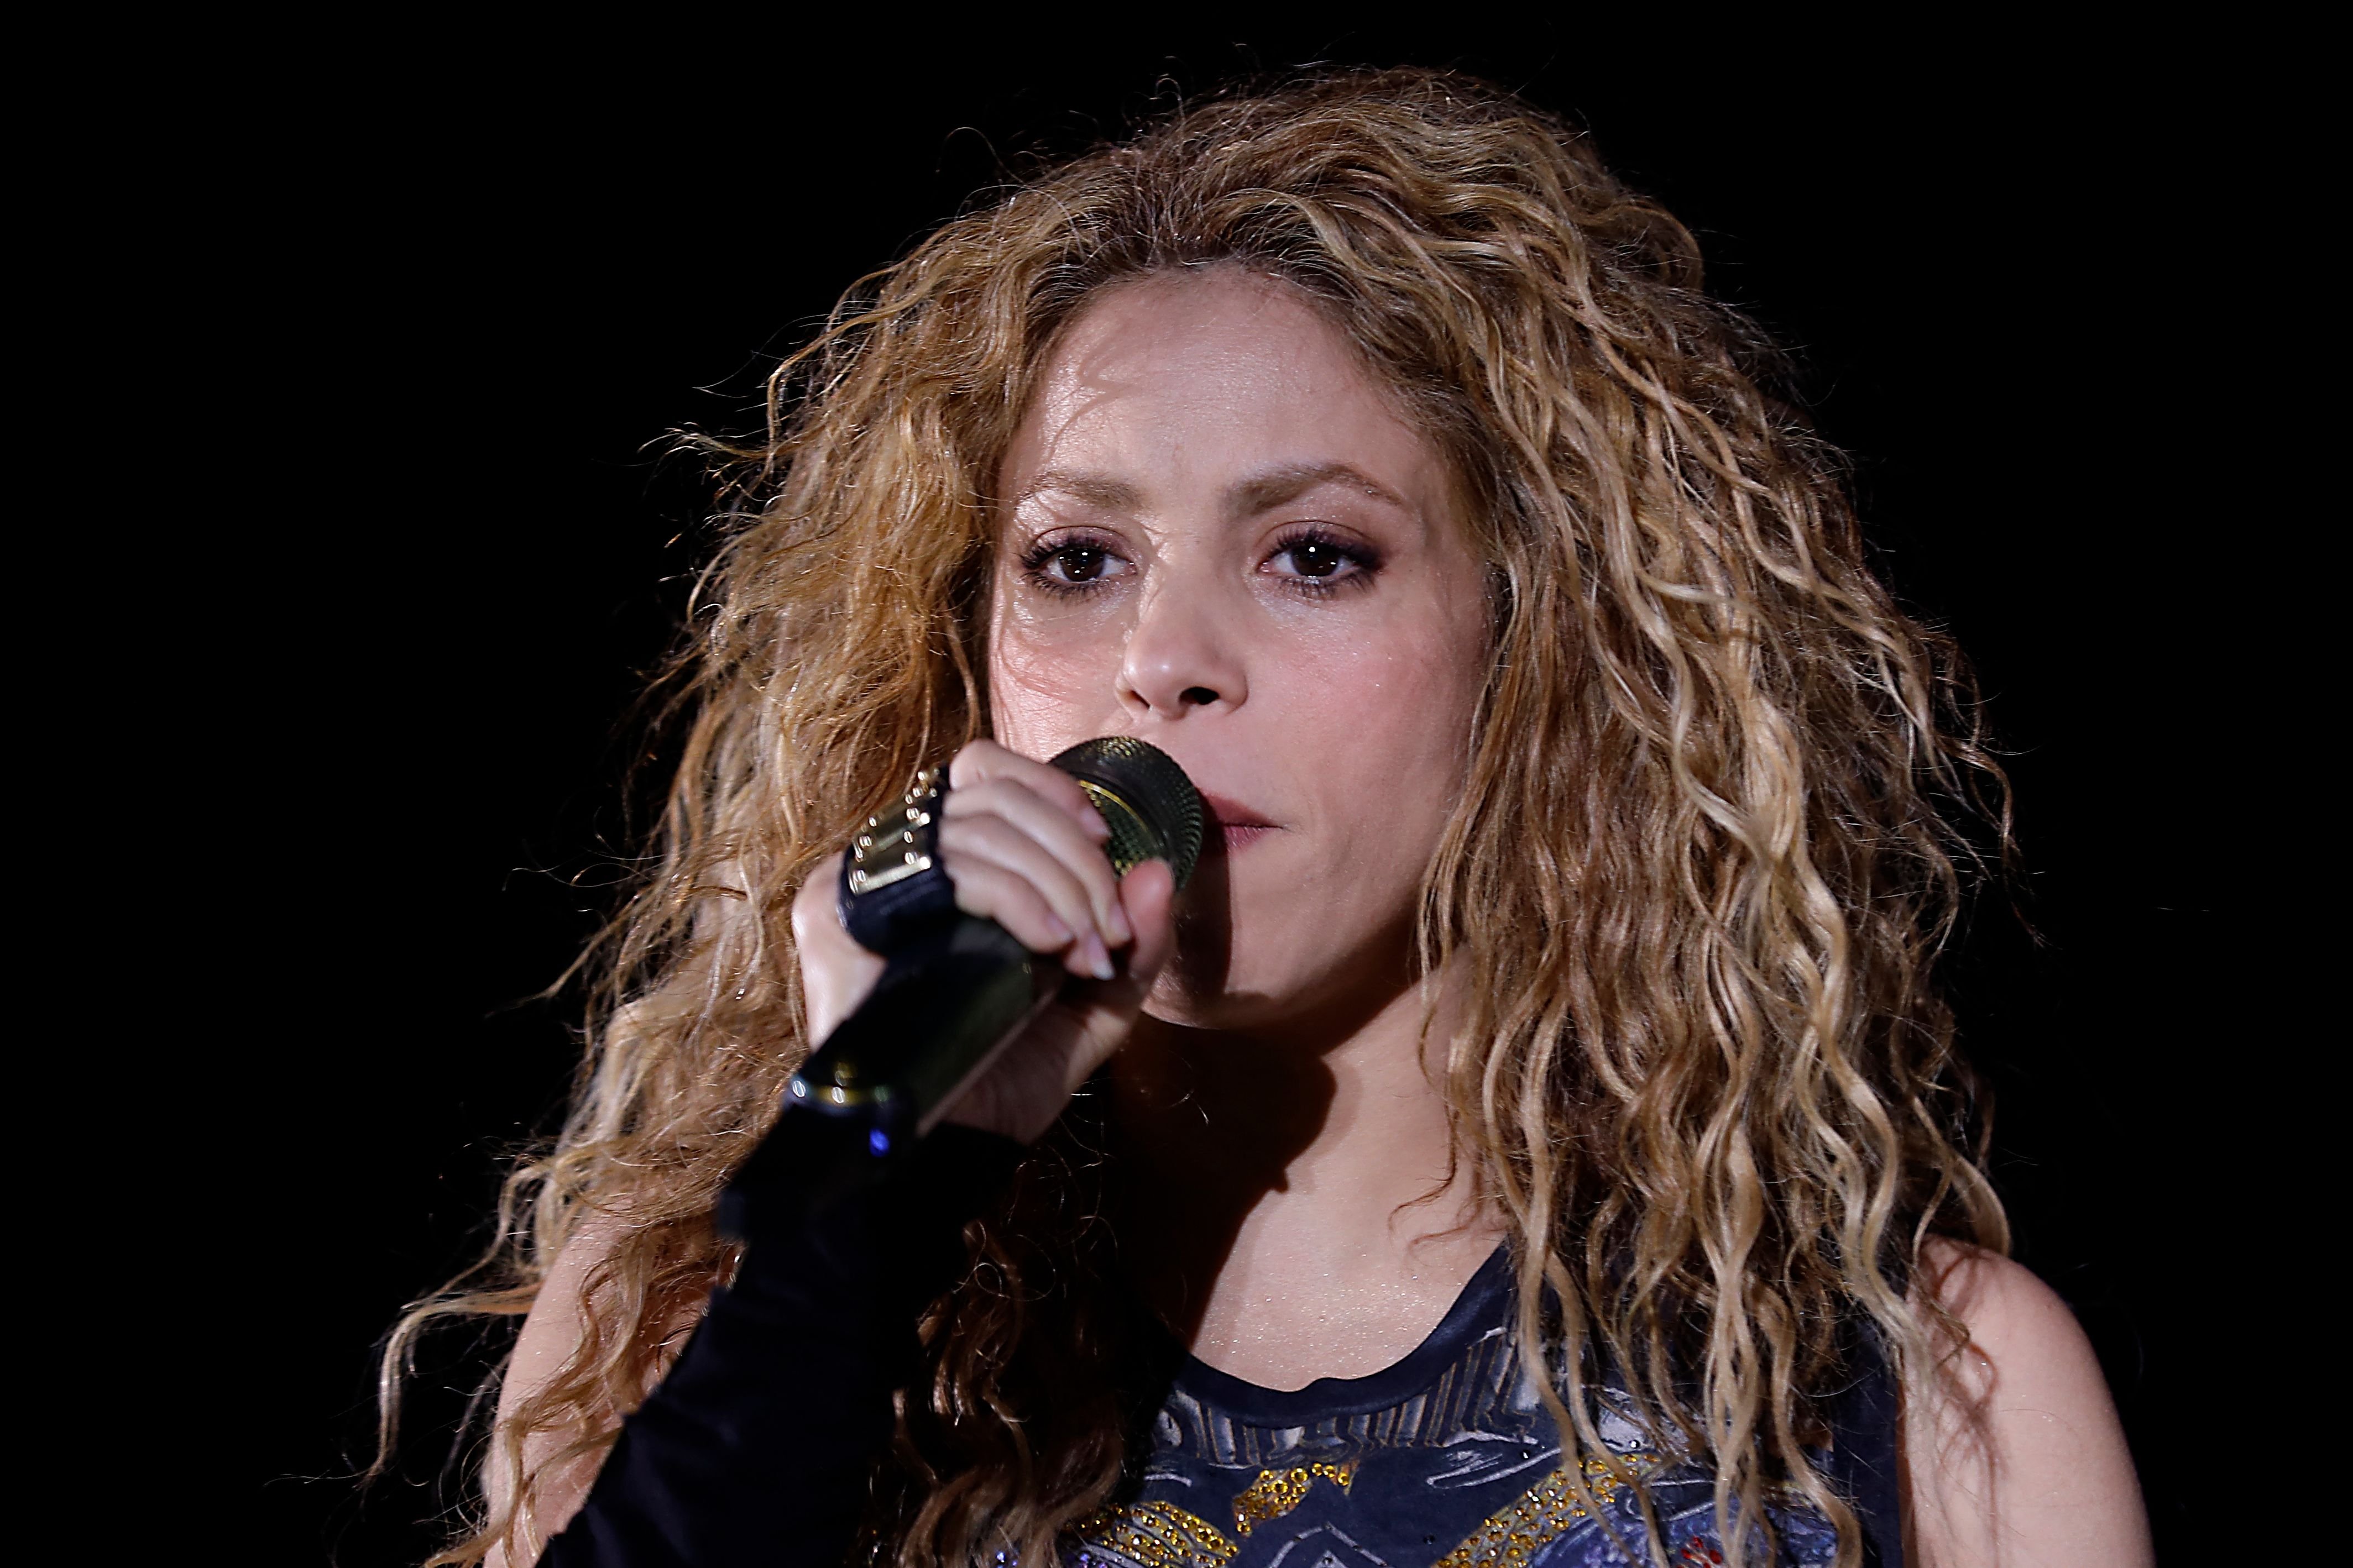 La cantante colombiana Shakira se presenta en la gran inauguración del Festival Internacional Cedars (CIF) en el norte del Líbano el 13 de julio de 2018 | Foto: Getty Images